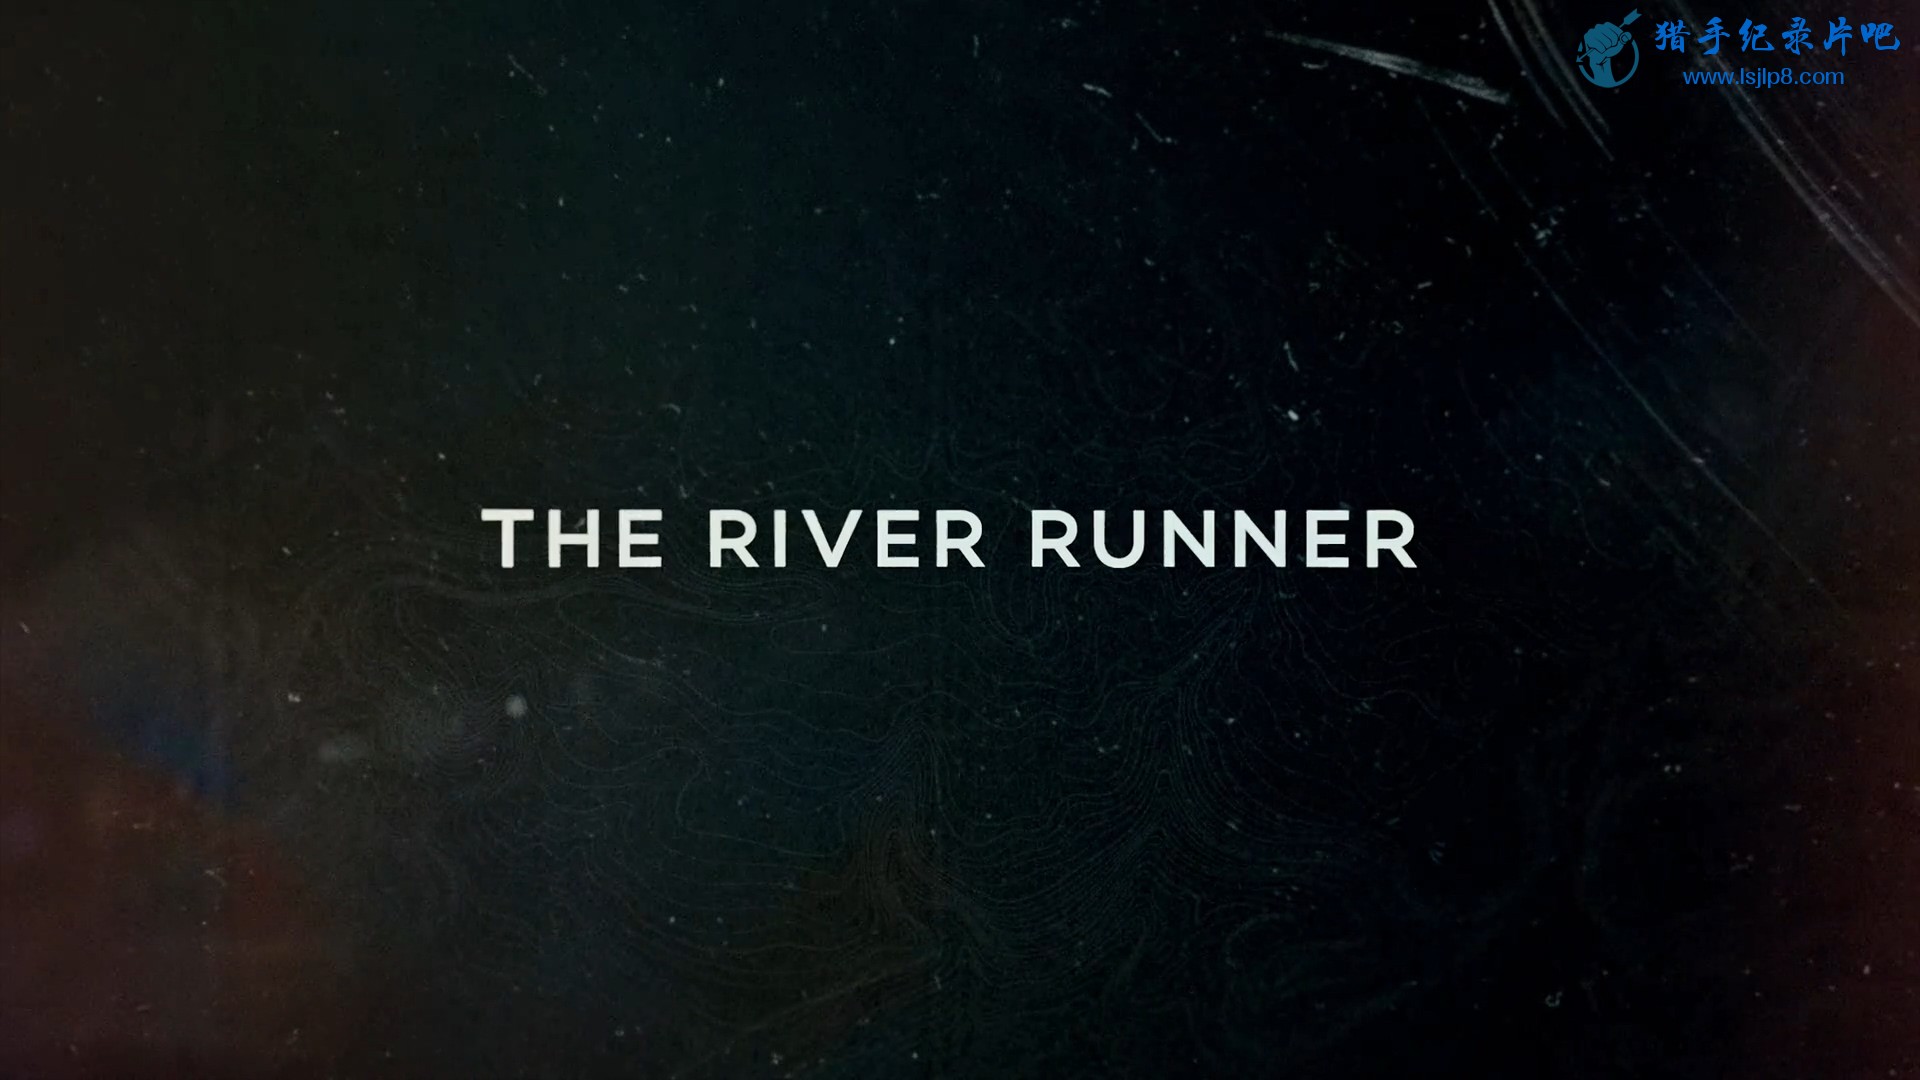 The.River.Runner.2021.1080p.NF.WEB-DL.DDP2.0.x264-T4H.mkv_20210923_112644.562.jpg